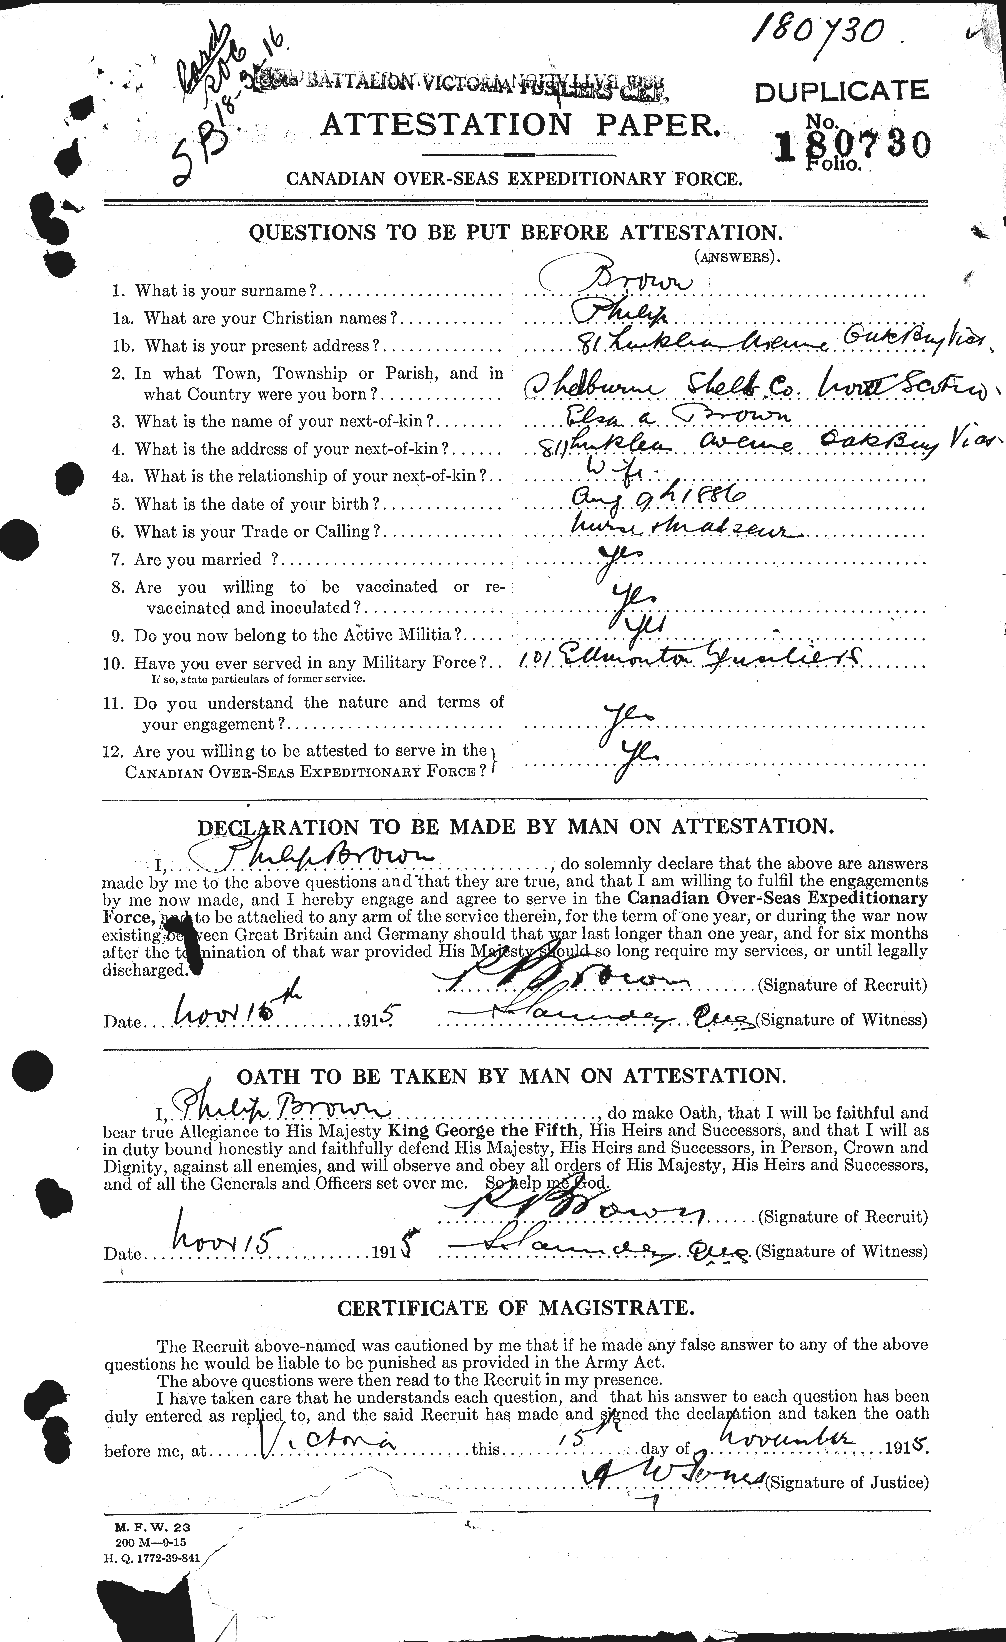 Dossiers du Personnel de la Première Guerre mondiale - CEC 267209a